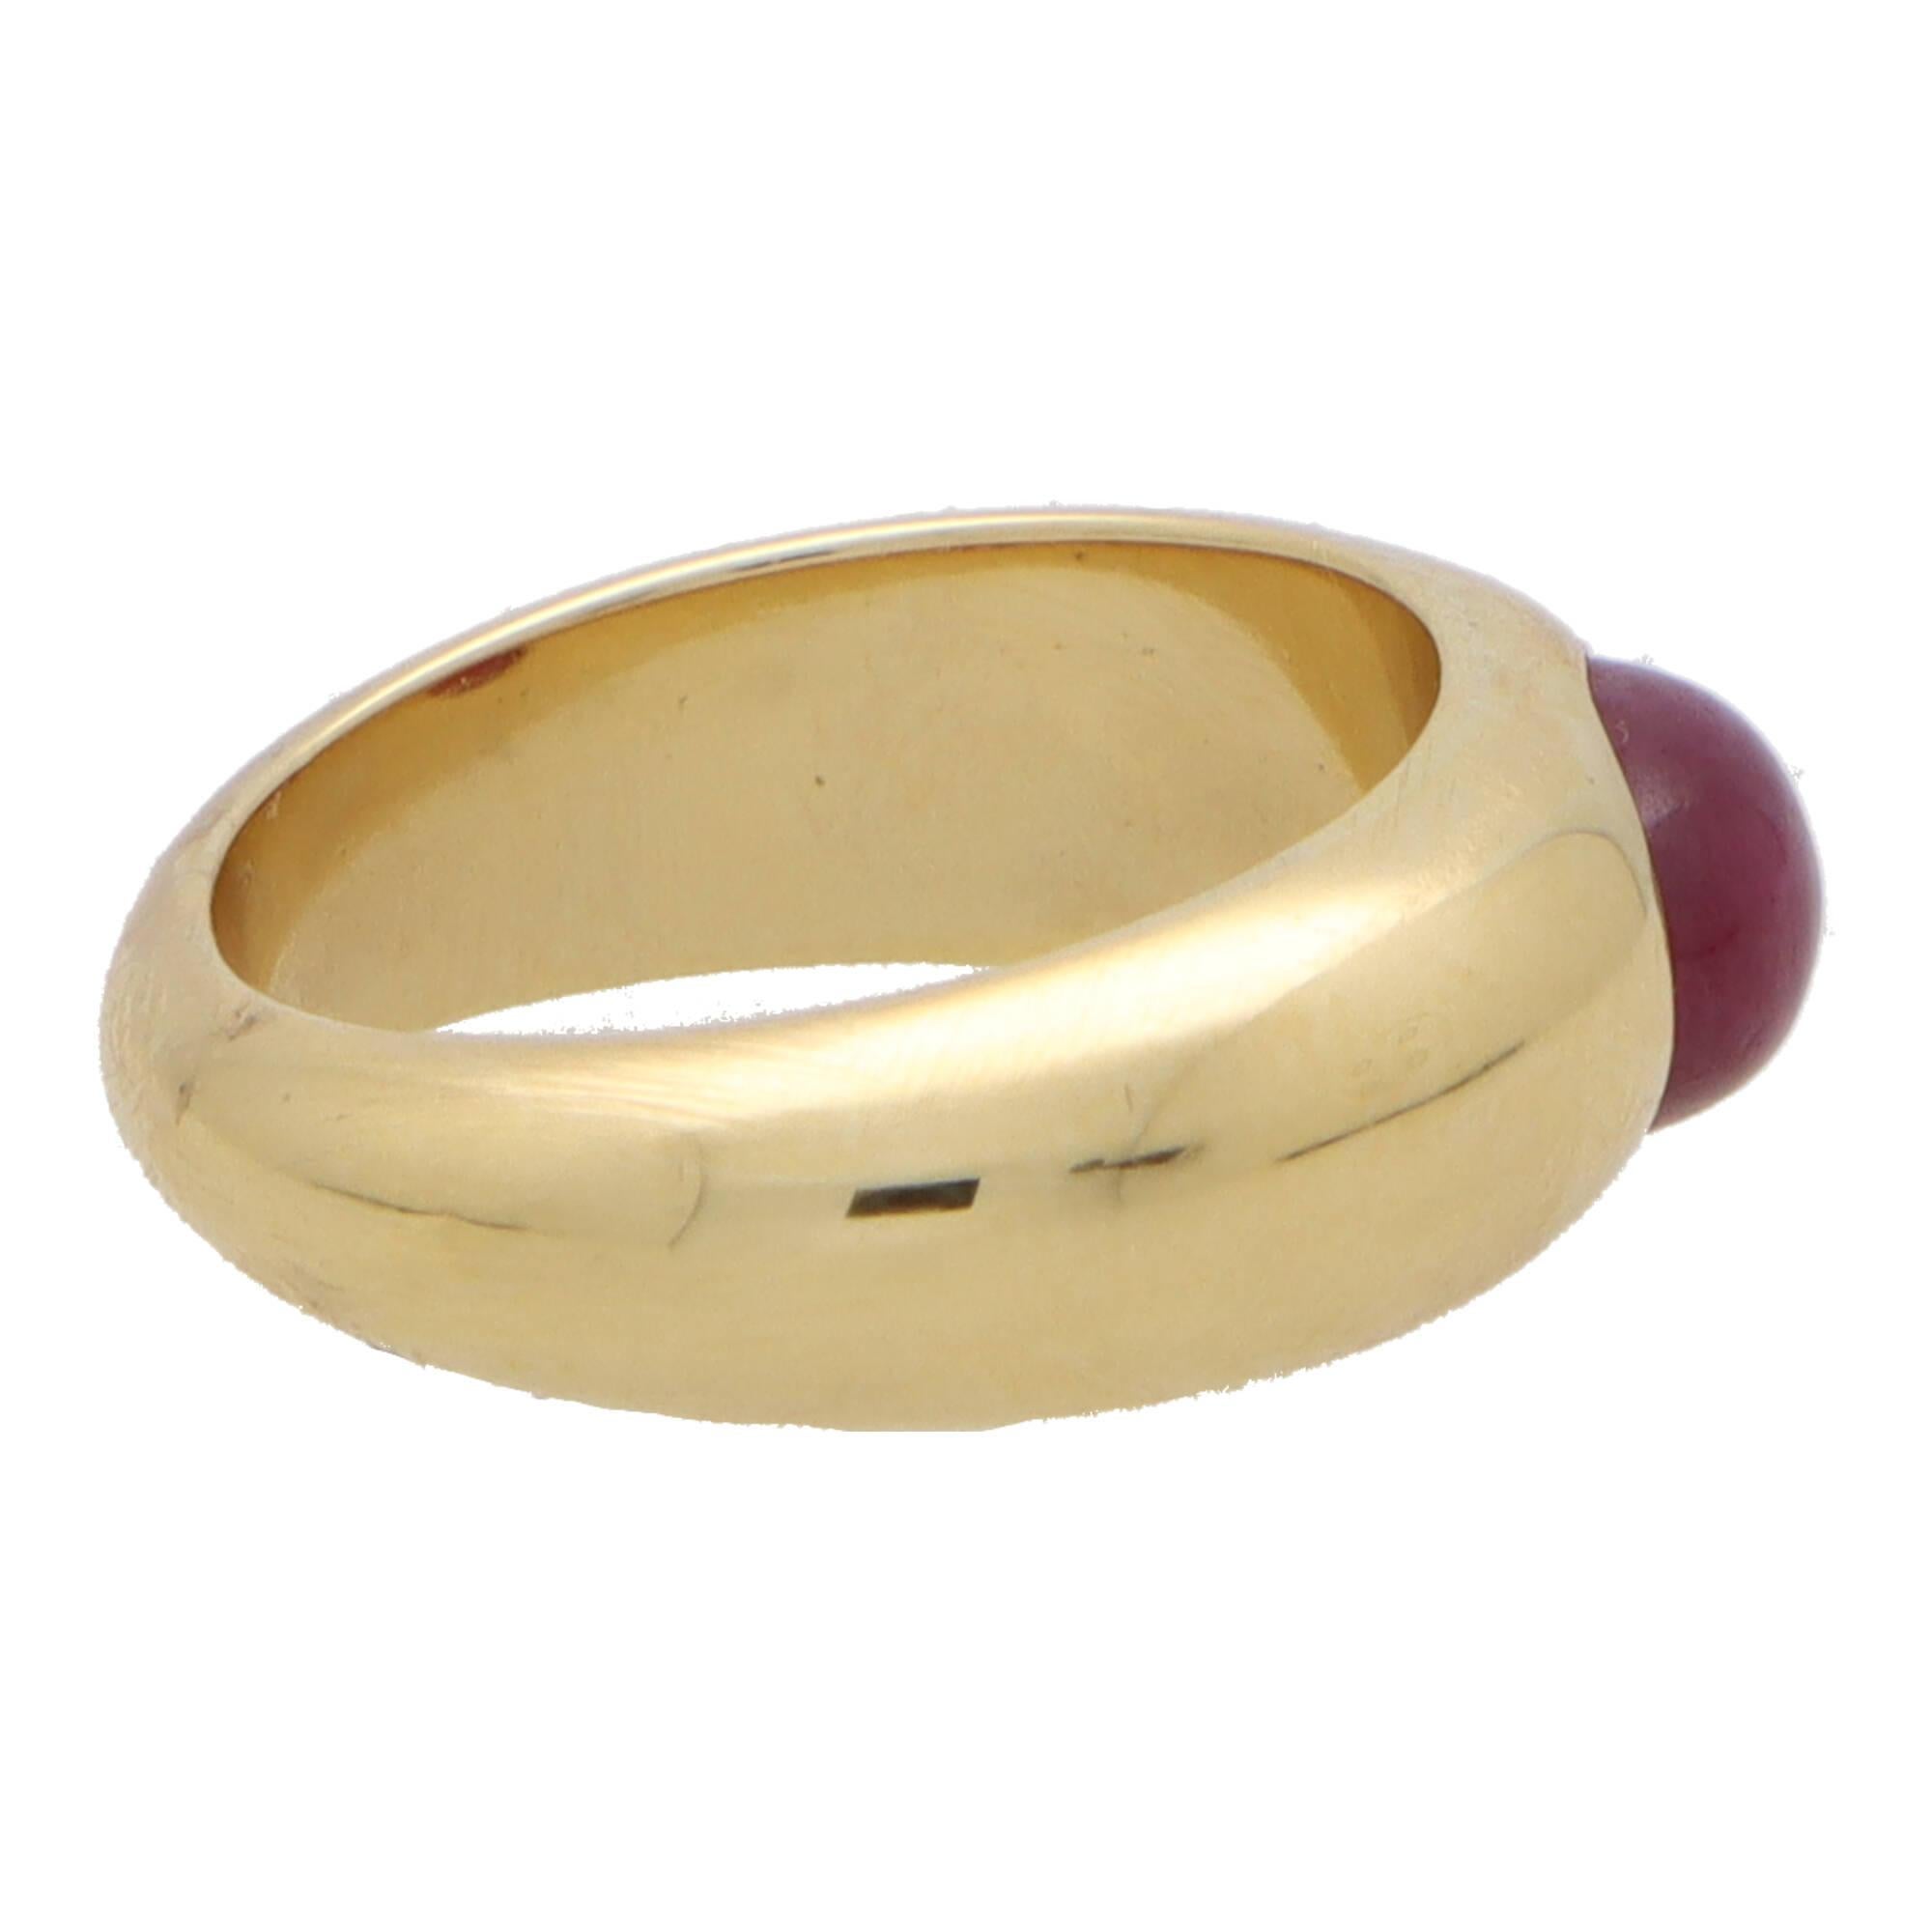 Ein stilvoller Vintage-Cabochon Rubin Zigeuner Set chunky Ring in 18k Gelbgold gesetzt.

Der Ring ist ausschließlich mit einem ovalen Cabochon lebhaften roten Rubin Stein, der Lünette sicher in einem klobigen Stil Band gesetzt ist.

Aufgrund des